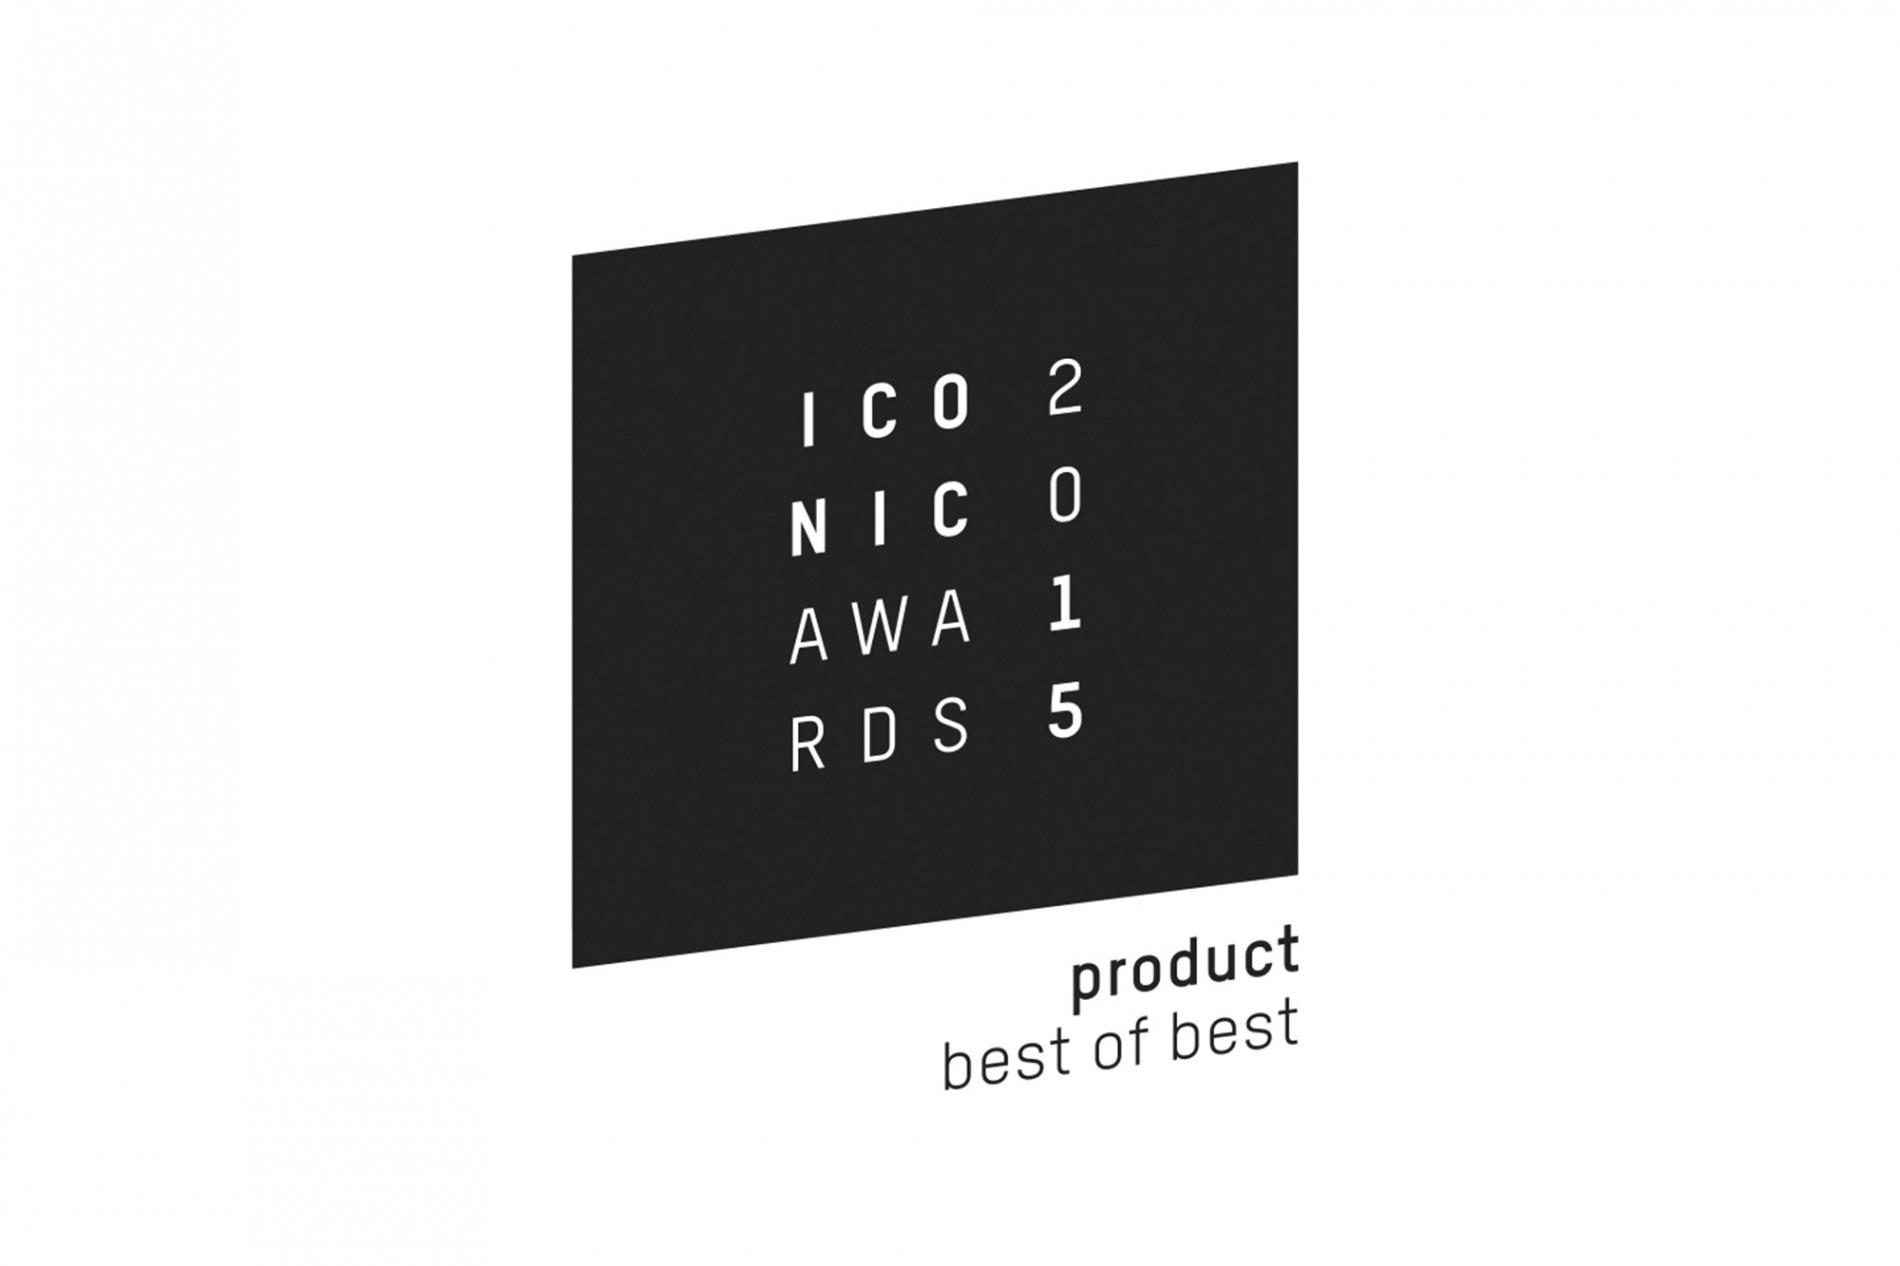 Iconic_Award